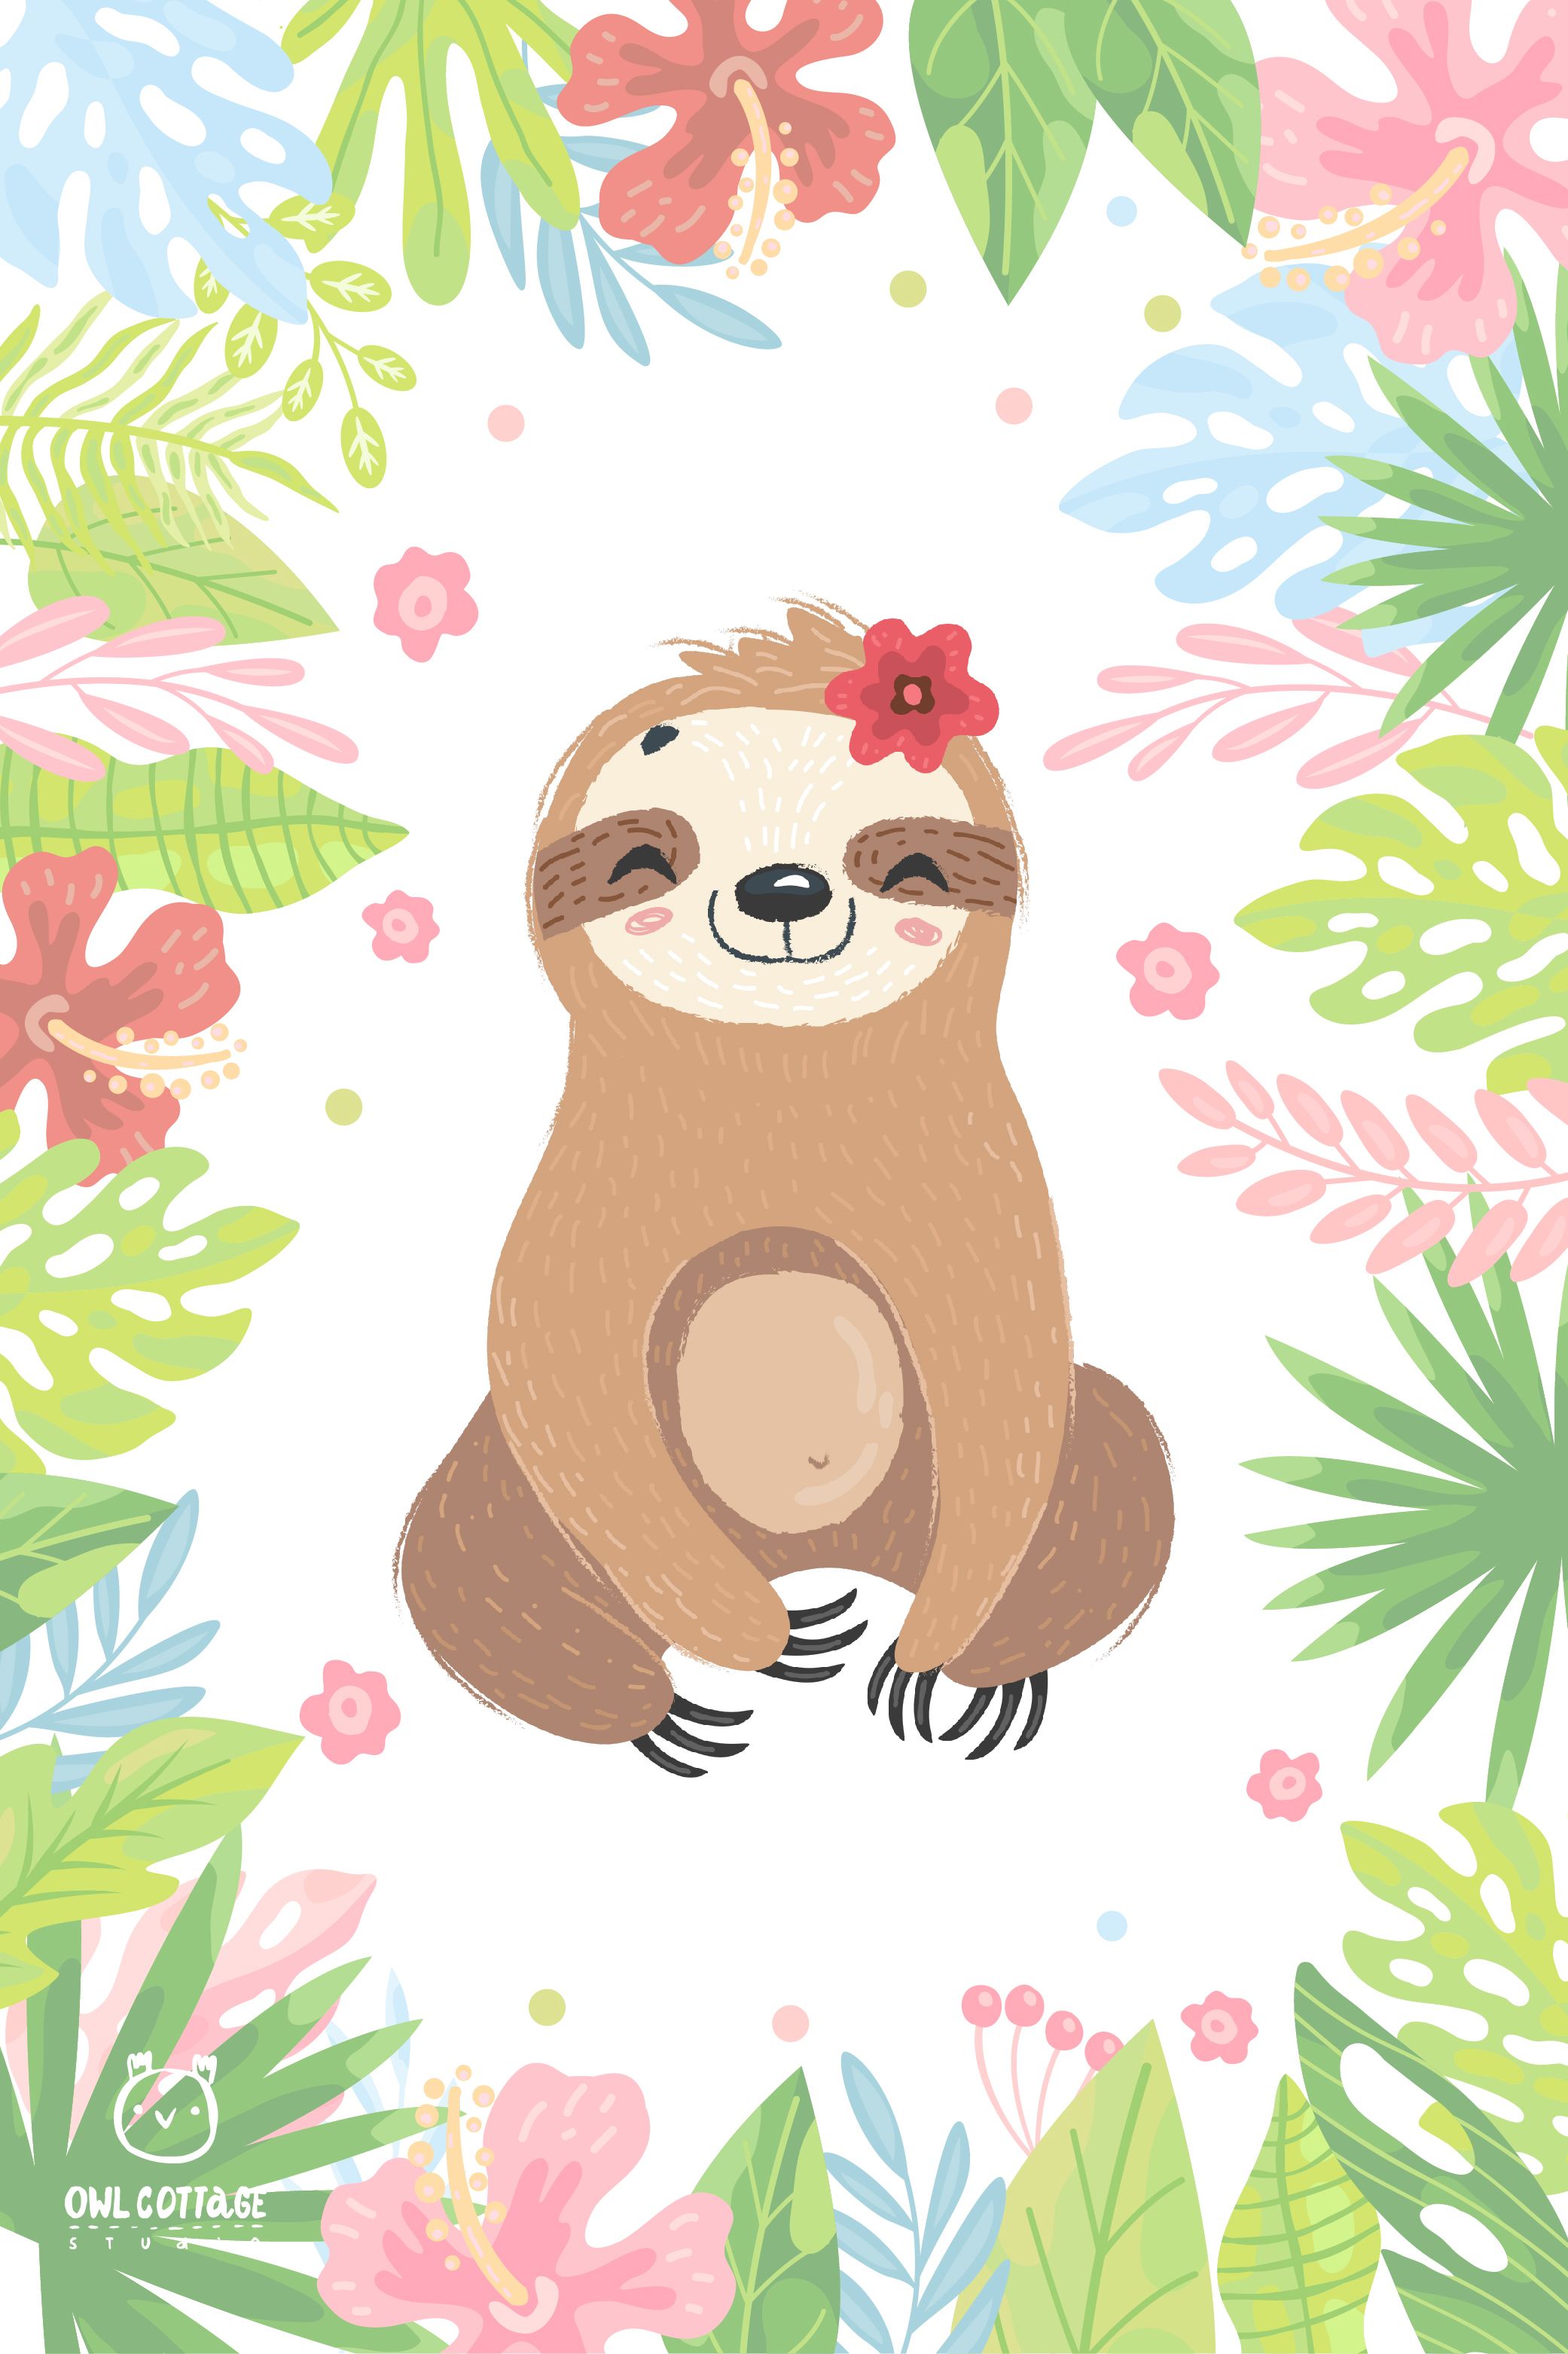 Cute Sloth Clipart Collection, Cute Cartoon Sloth. Sloth art, Cute drawings, Cute sloth